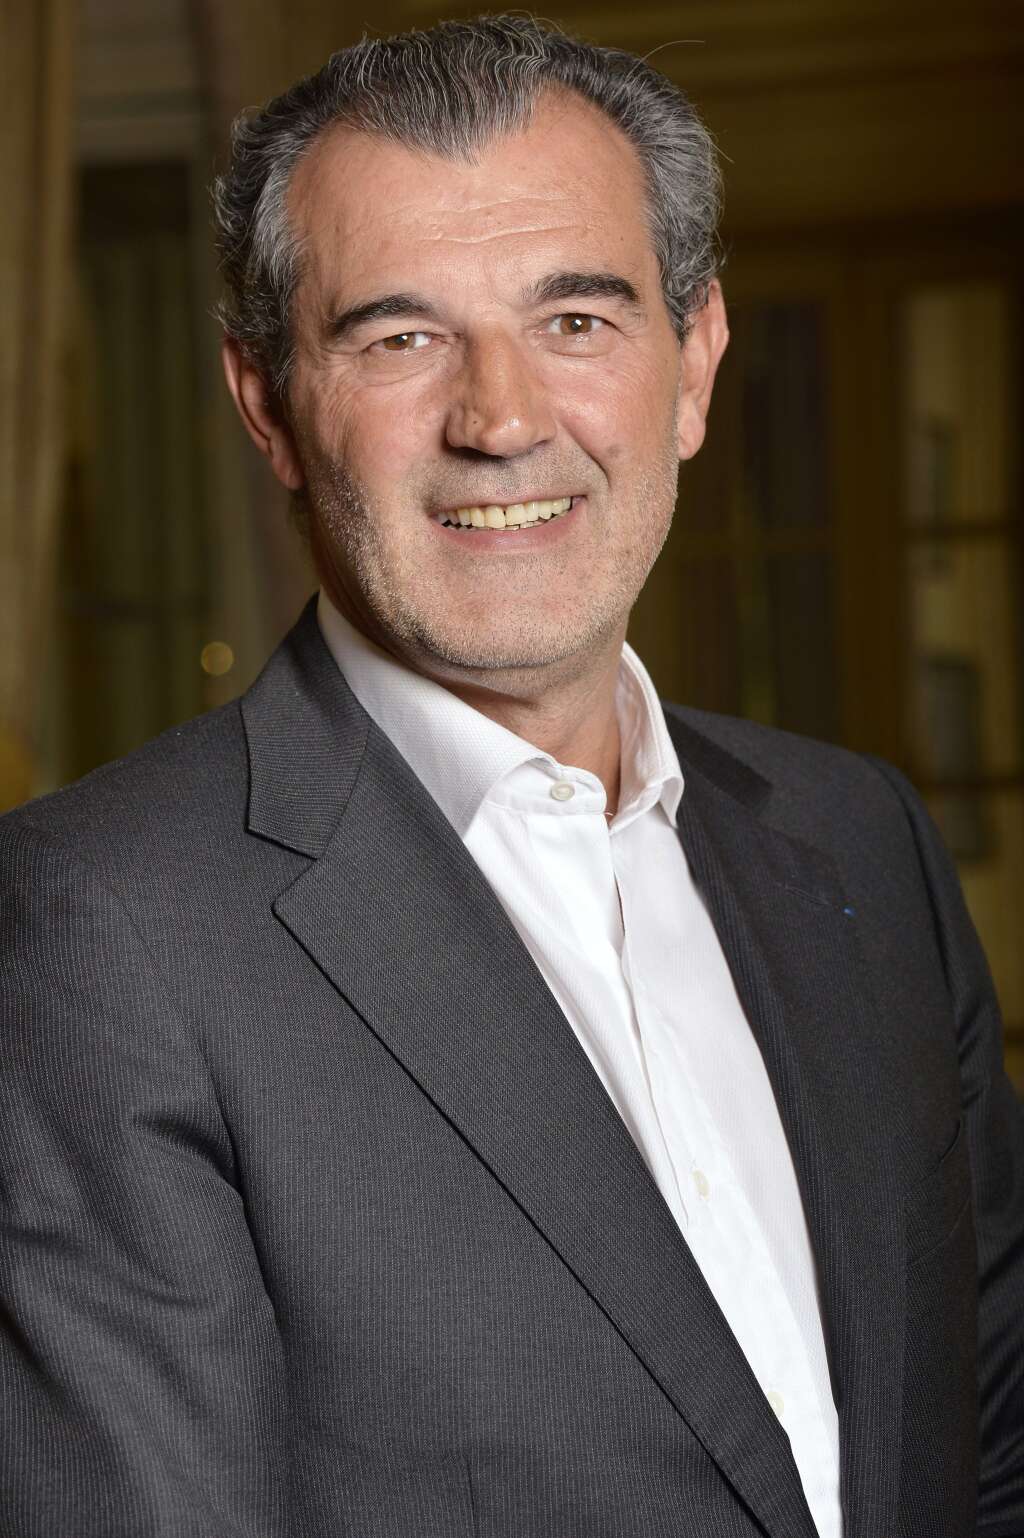 11 mars - Laurent Vimont - Le président du groupe Century 21 France a succombé à une crise cardiaque à l'âge de 61 ans.

<strong>> Lire notre article complet <a href=